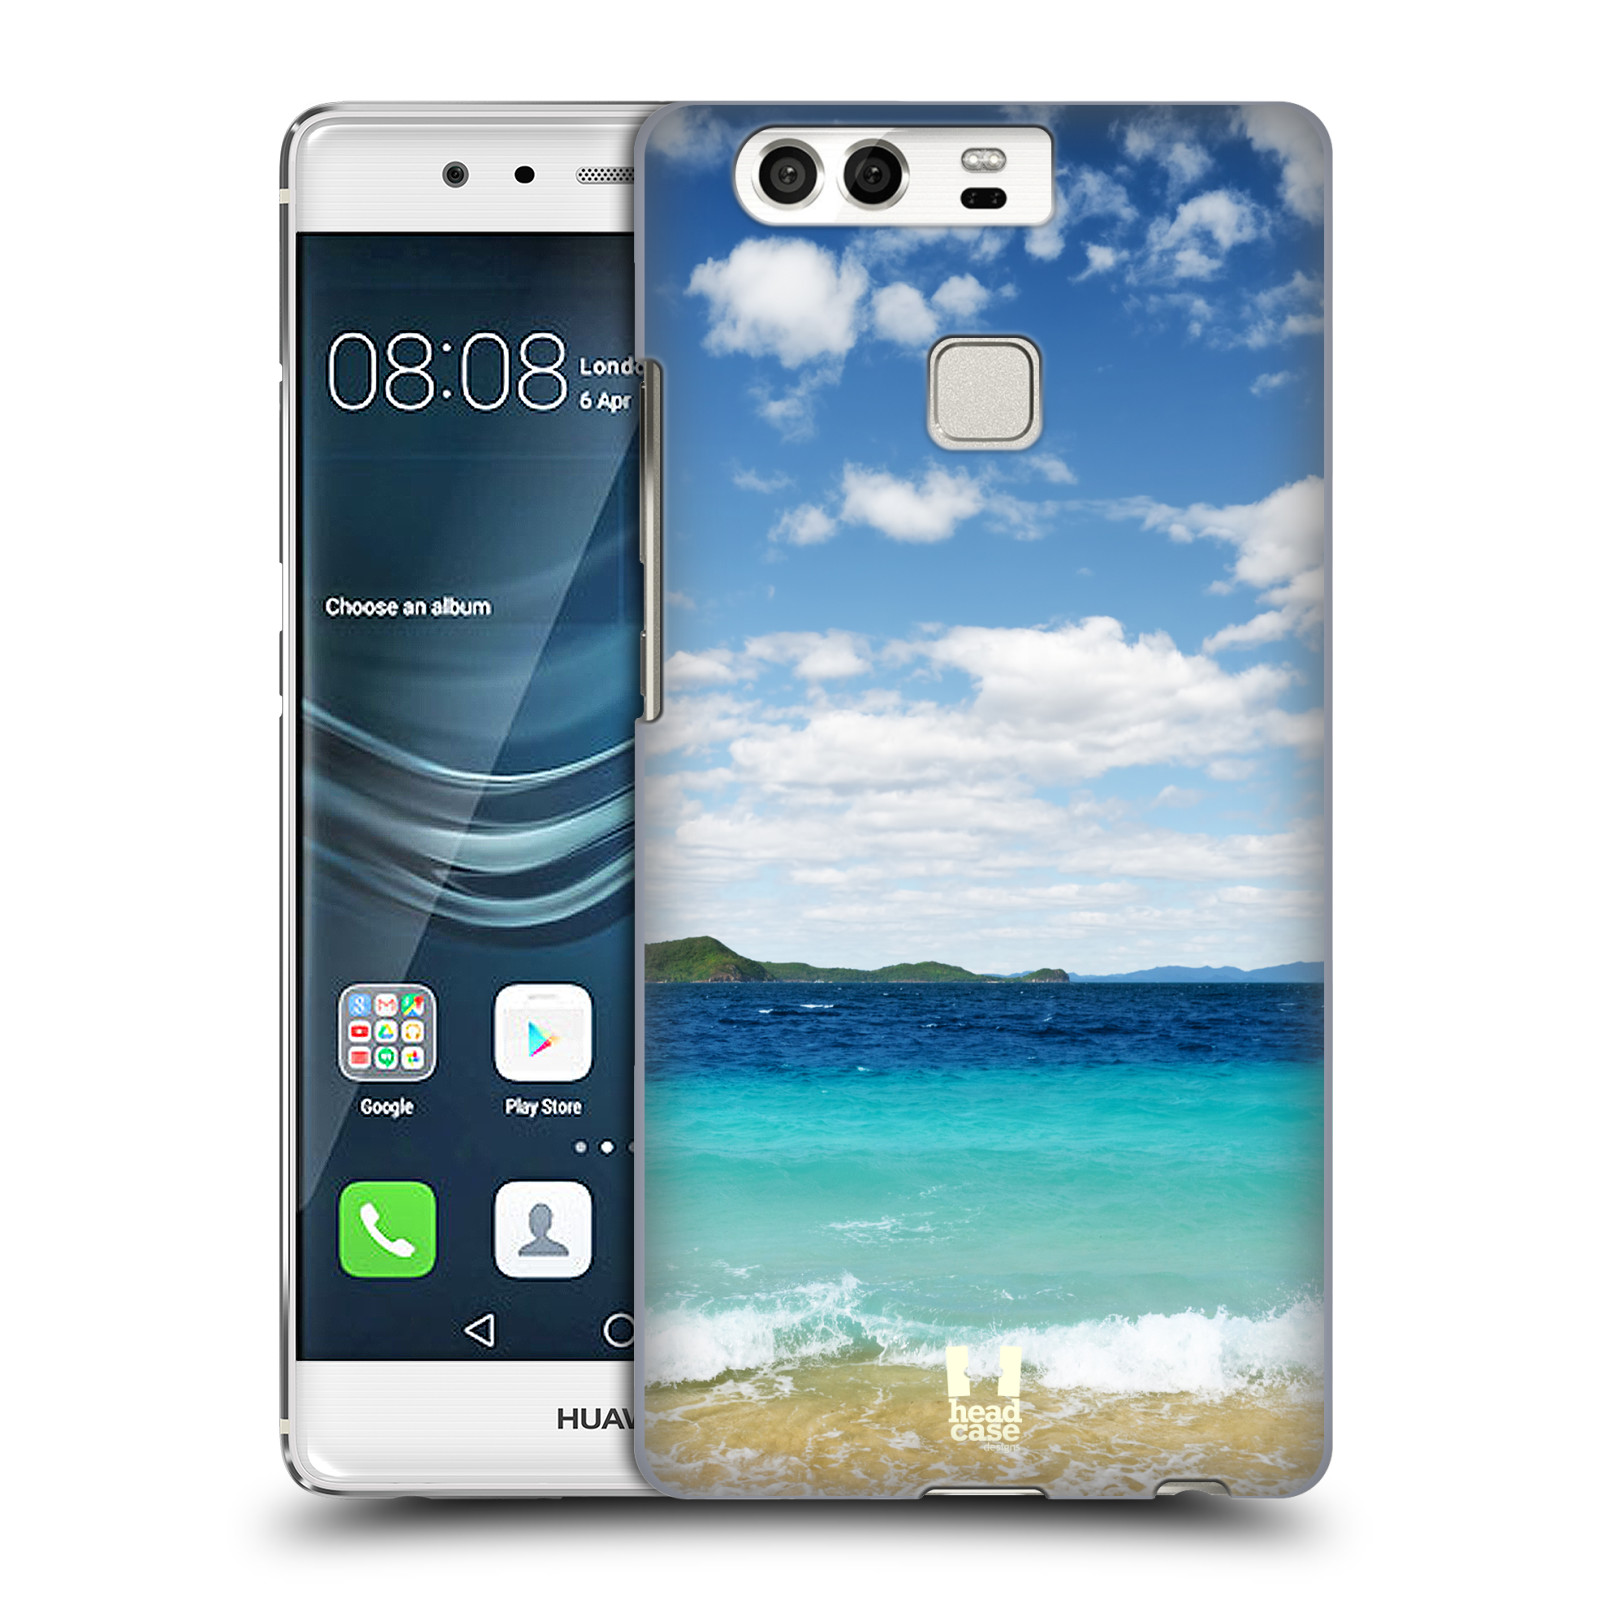 HEAD CASE plastový obal na mobil Huawei P9 / P9 DUAL SIM vzor Pláže a Moře VZDÁLENÝ OSTROV